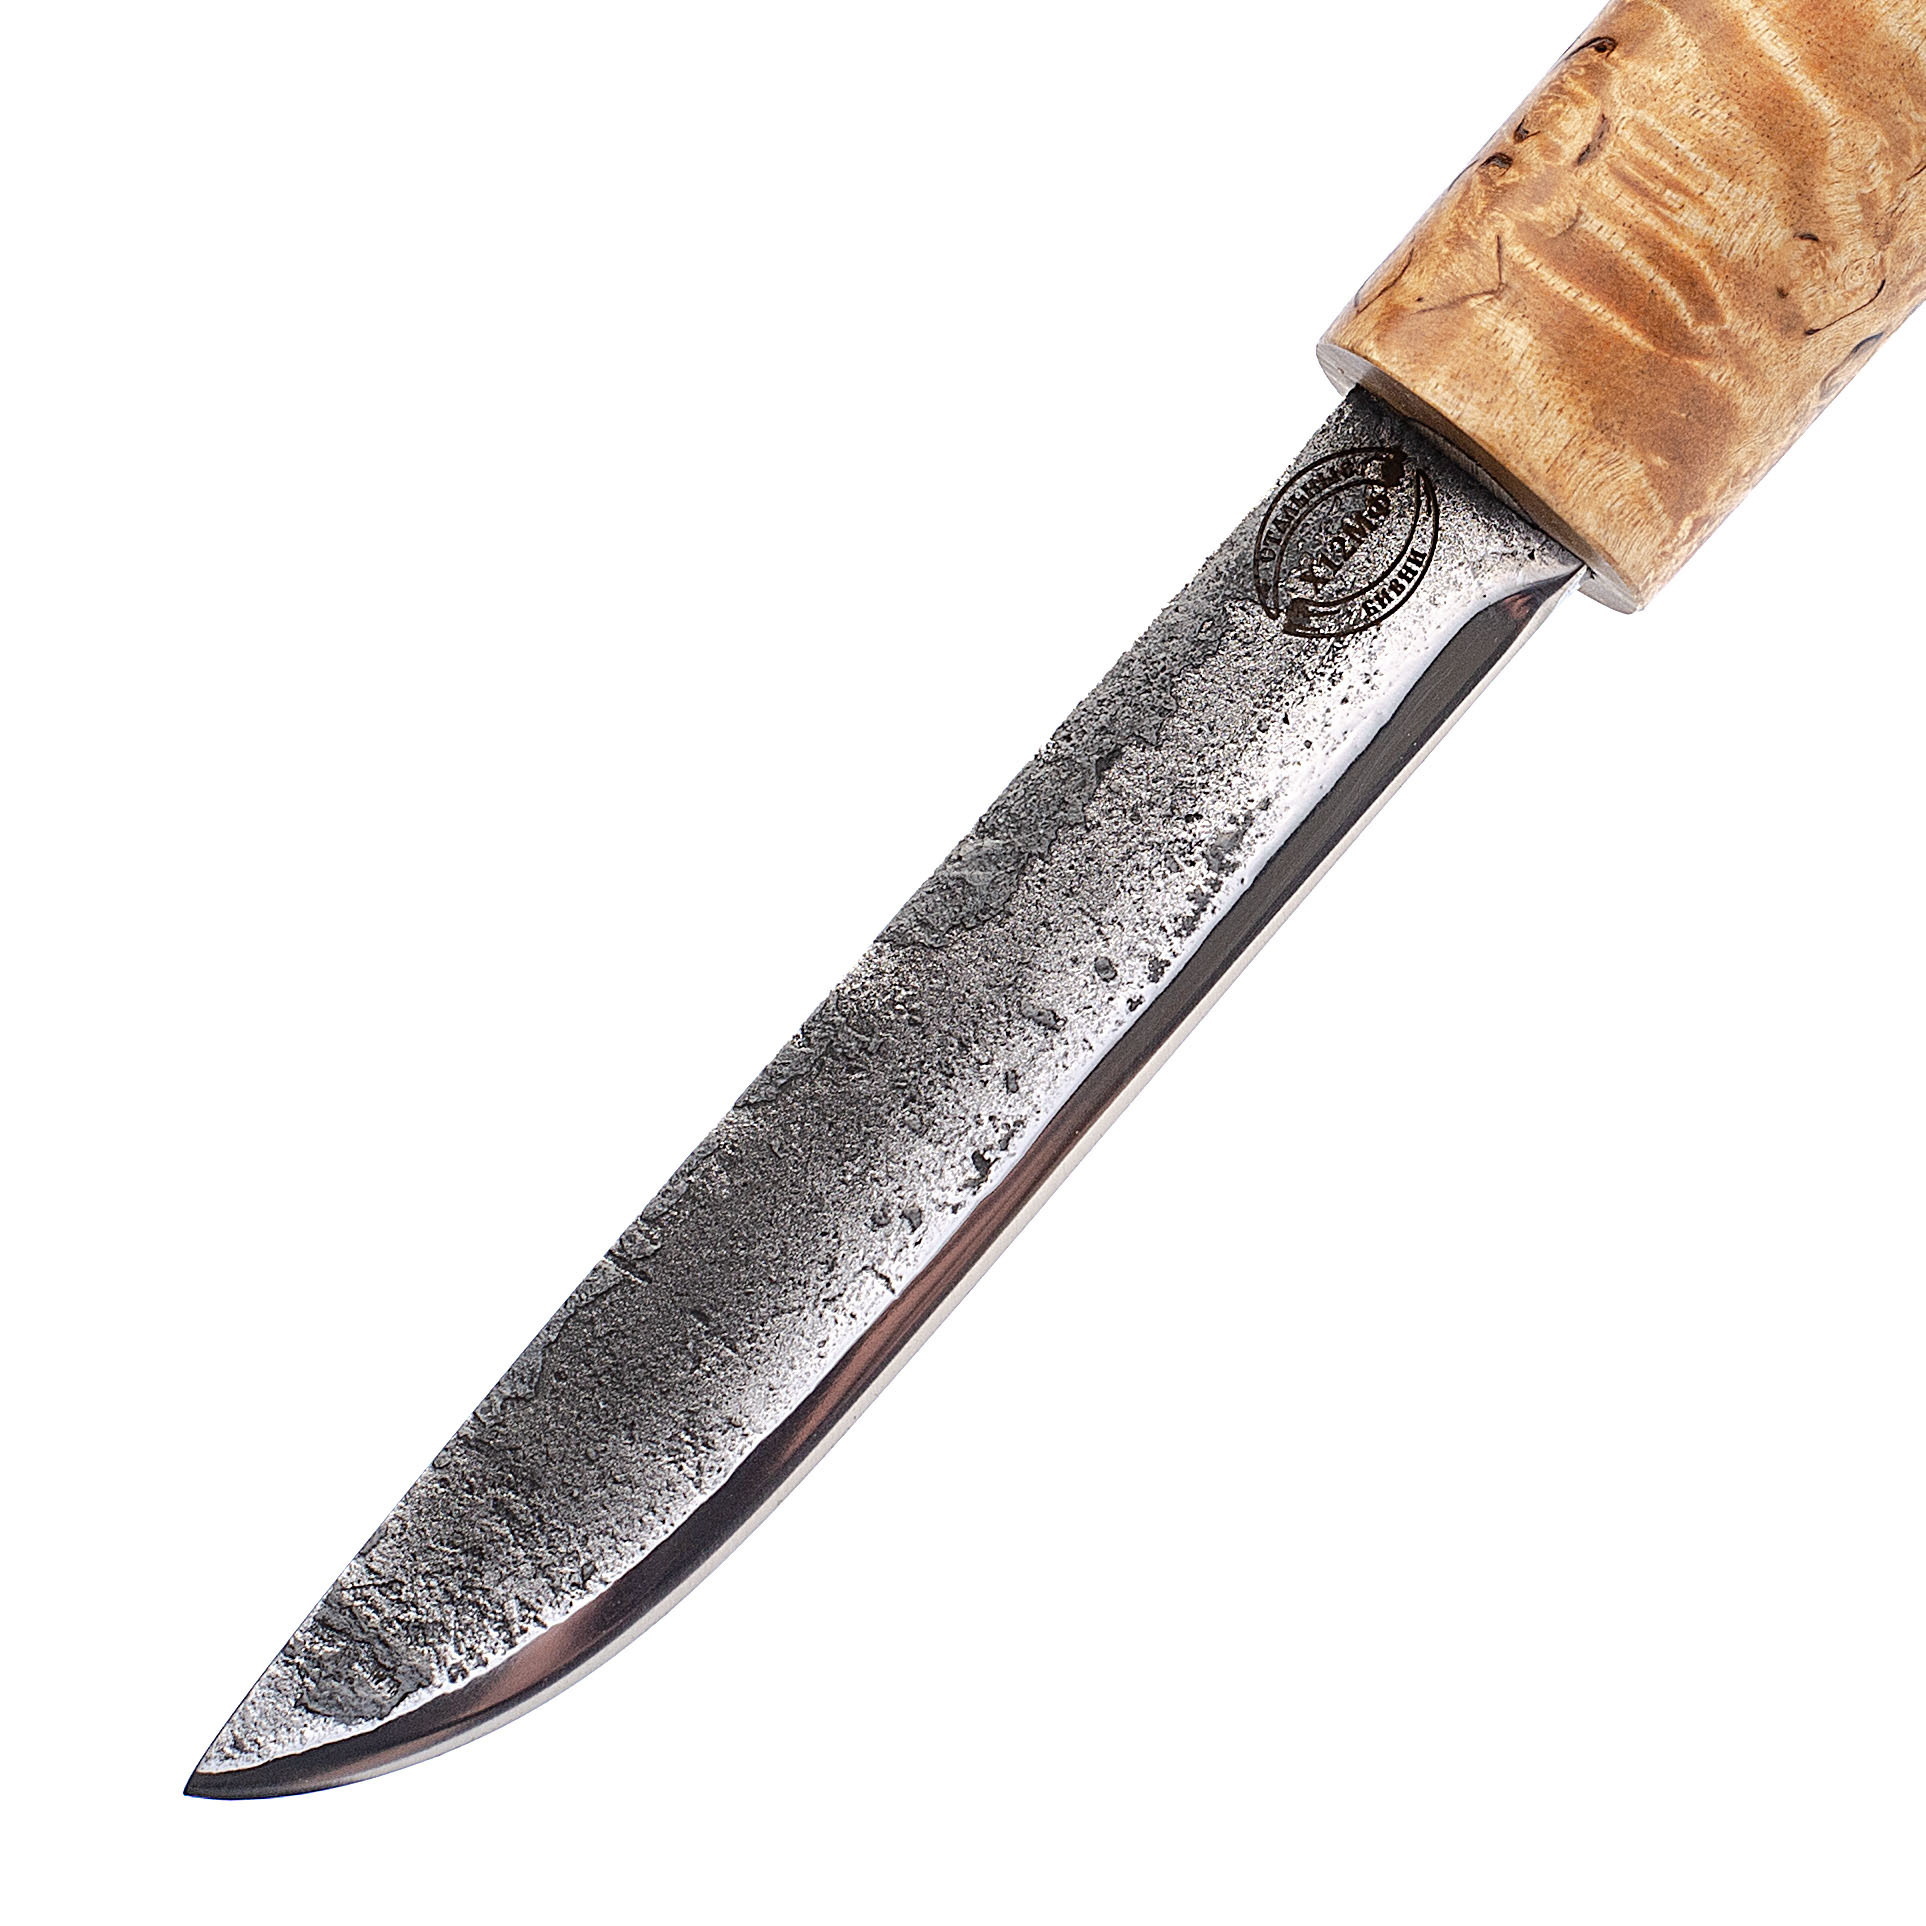 Нож Ханты-Манси в деревянных ножнах, сталь Х12МФ, берёзовый кап, венге-береста - фото 3